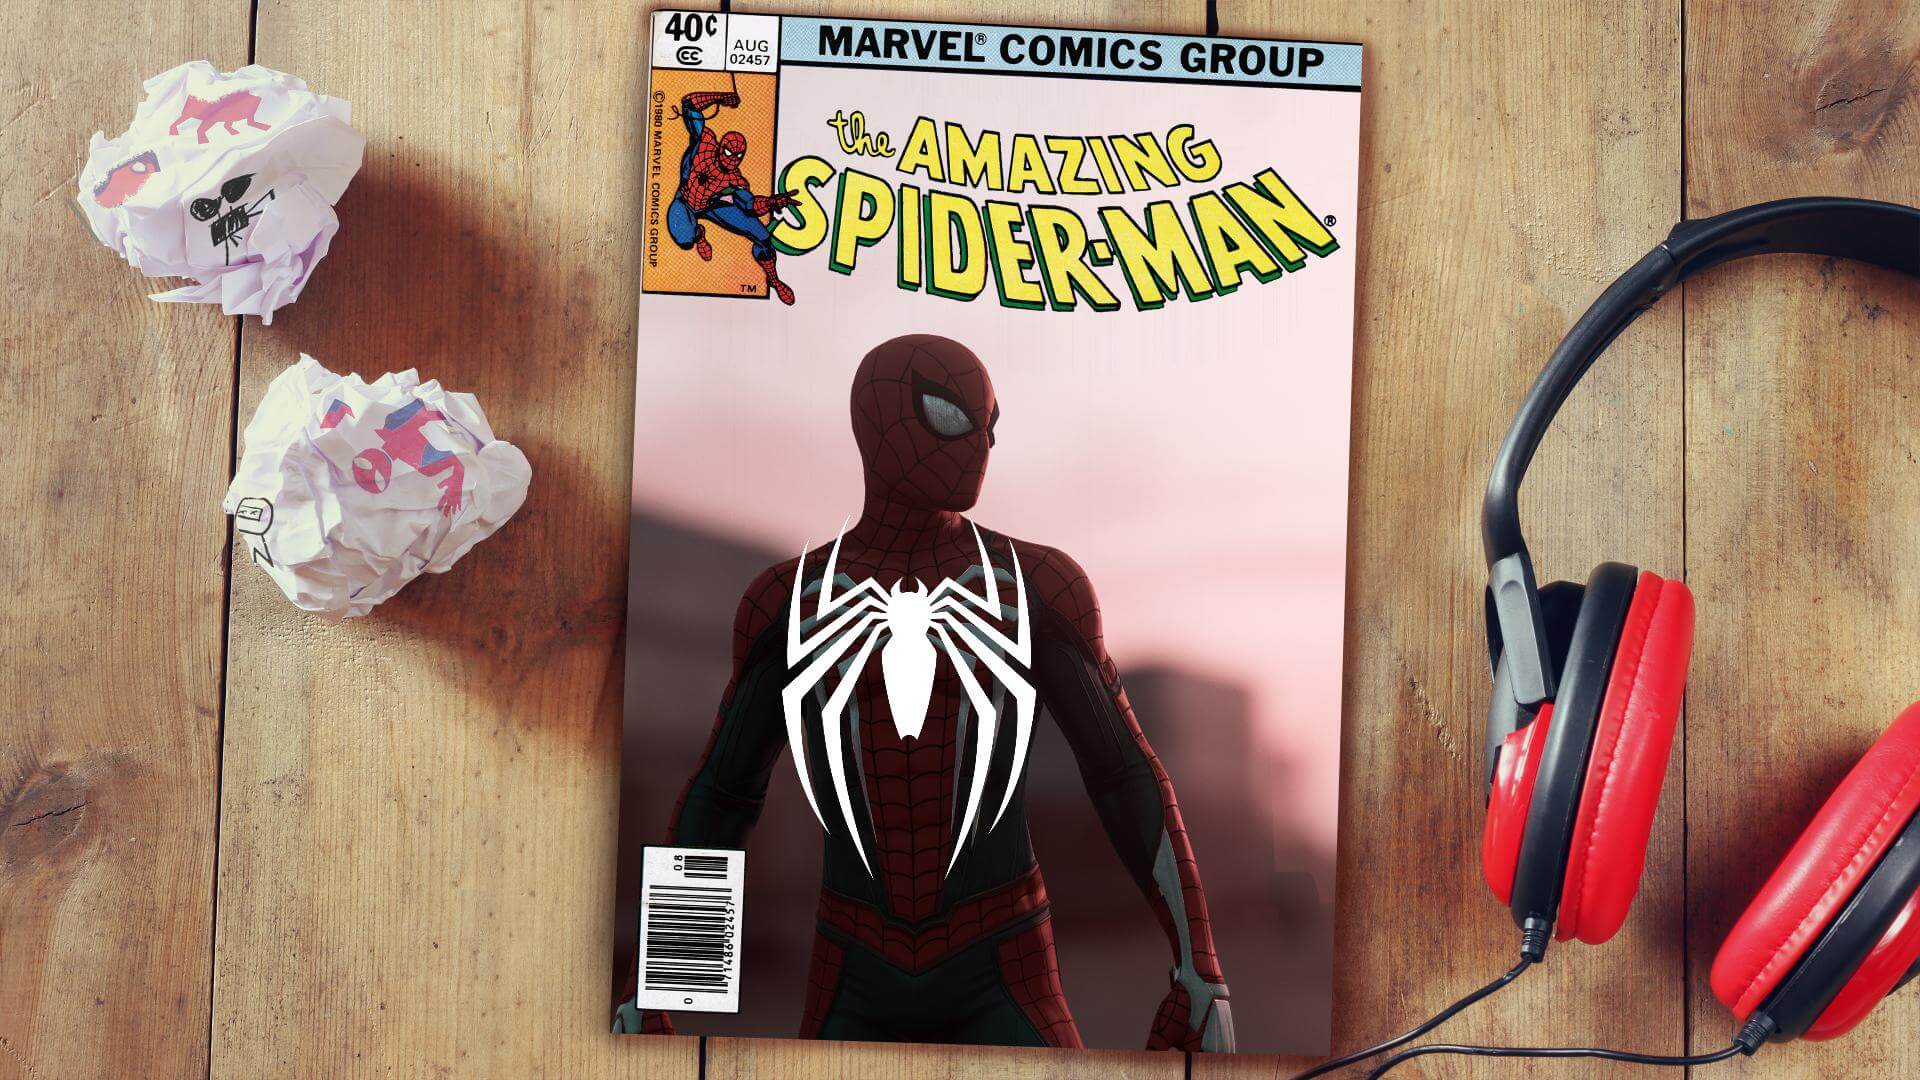 Marvel's Spider-Man - Guia de Troféus (Jogo base + DLC's) - Guia de Troféus  PS4 - GUIAS OFICIAIS - myPSt